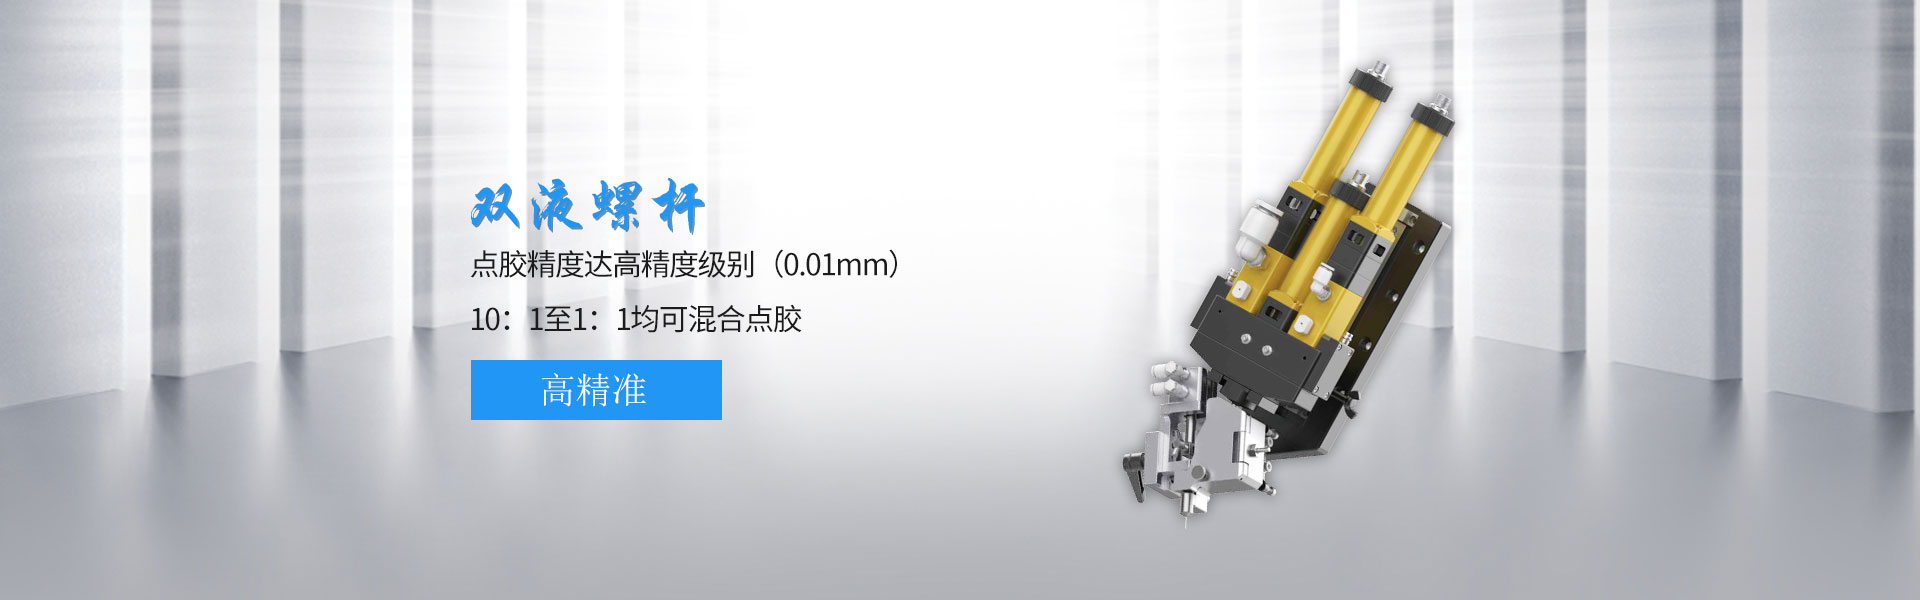 微量单液螺杆阀   SL-W100-深圳市润之鑫科技有限公司